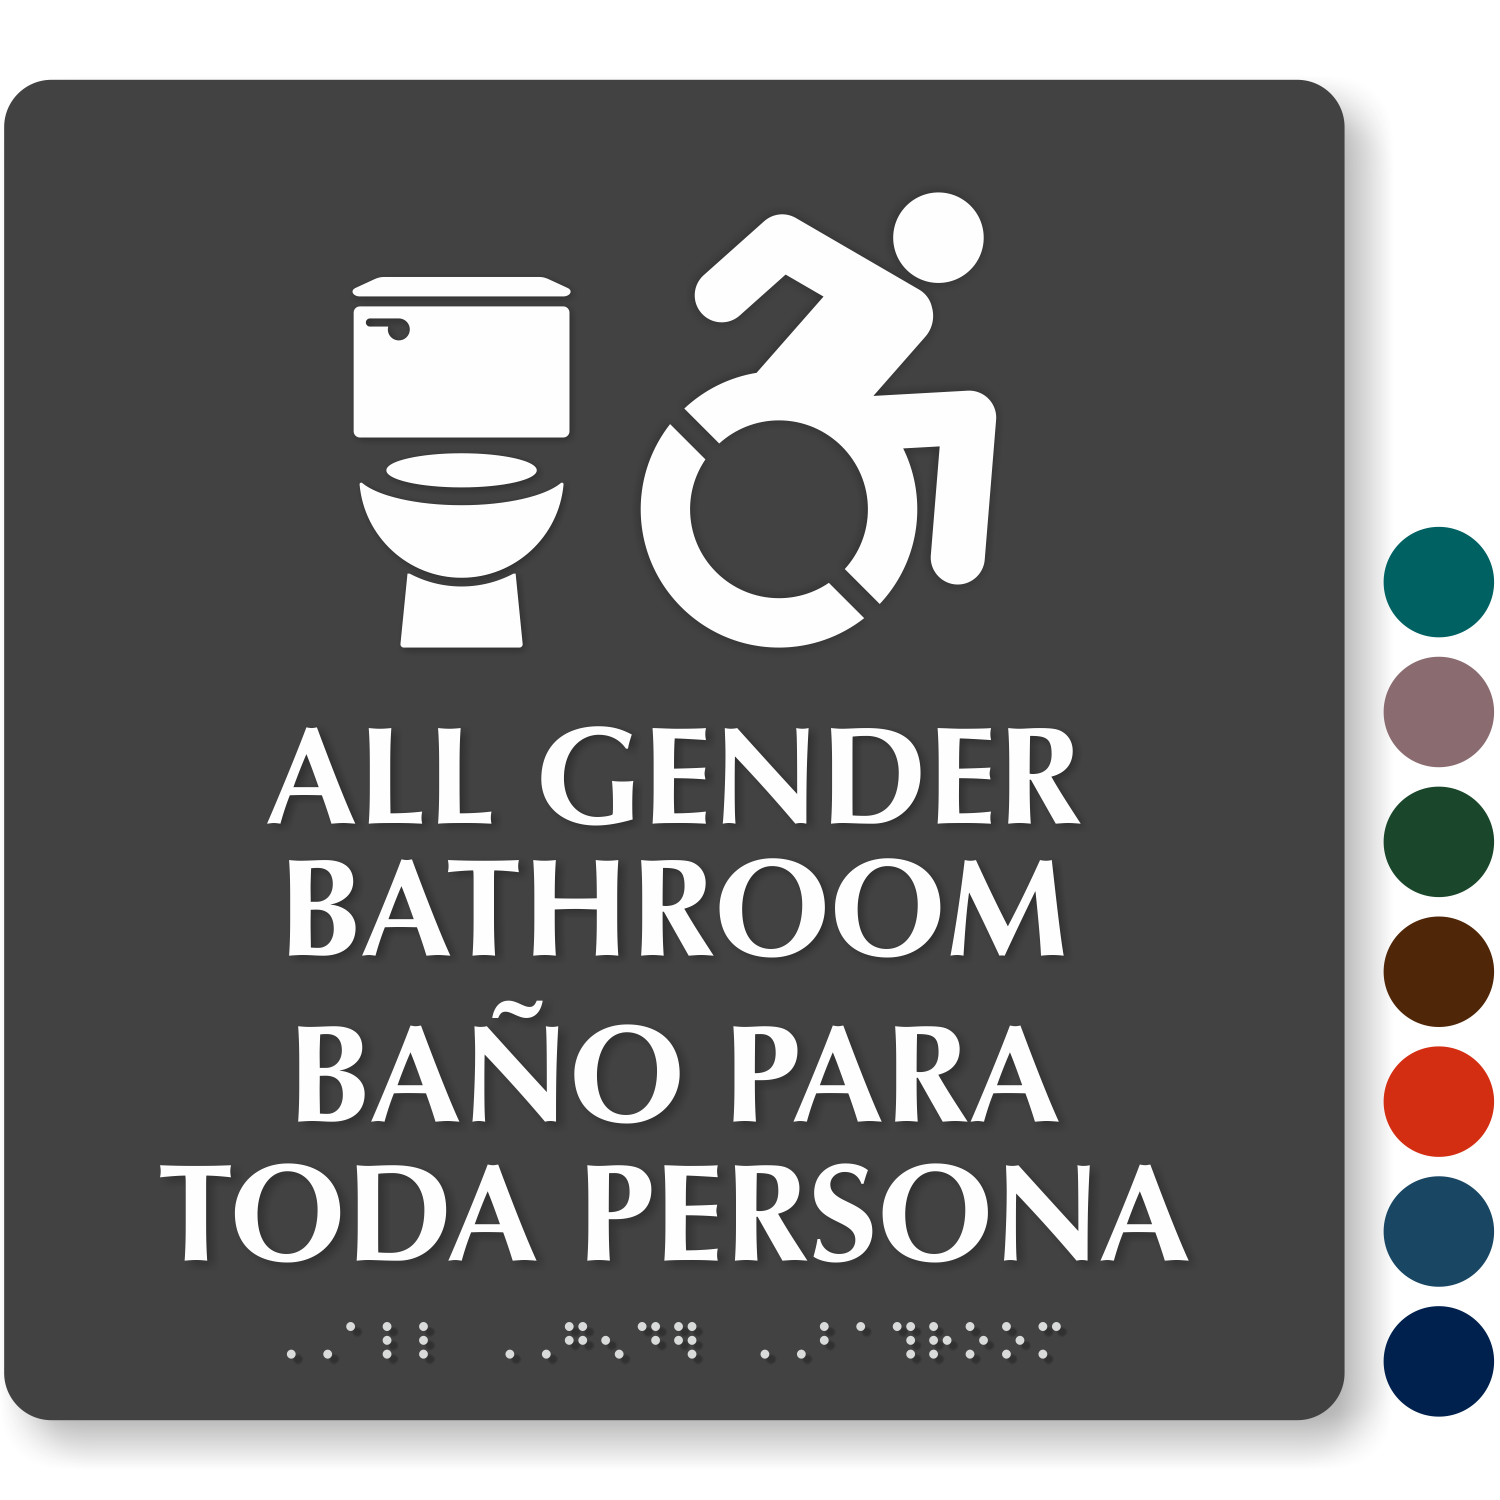 All-Gender Restroom Signs | Gender Neutral Restroom Signs